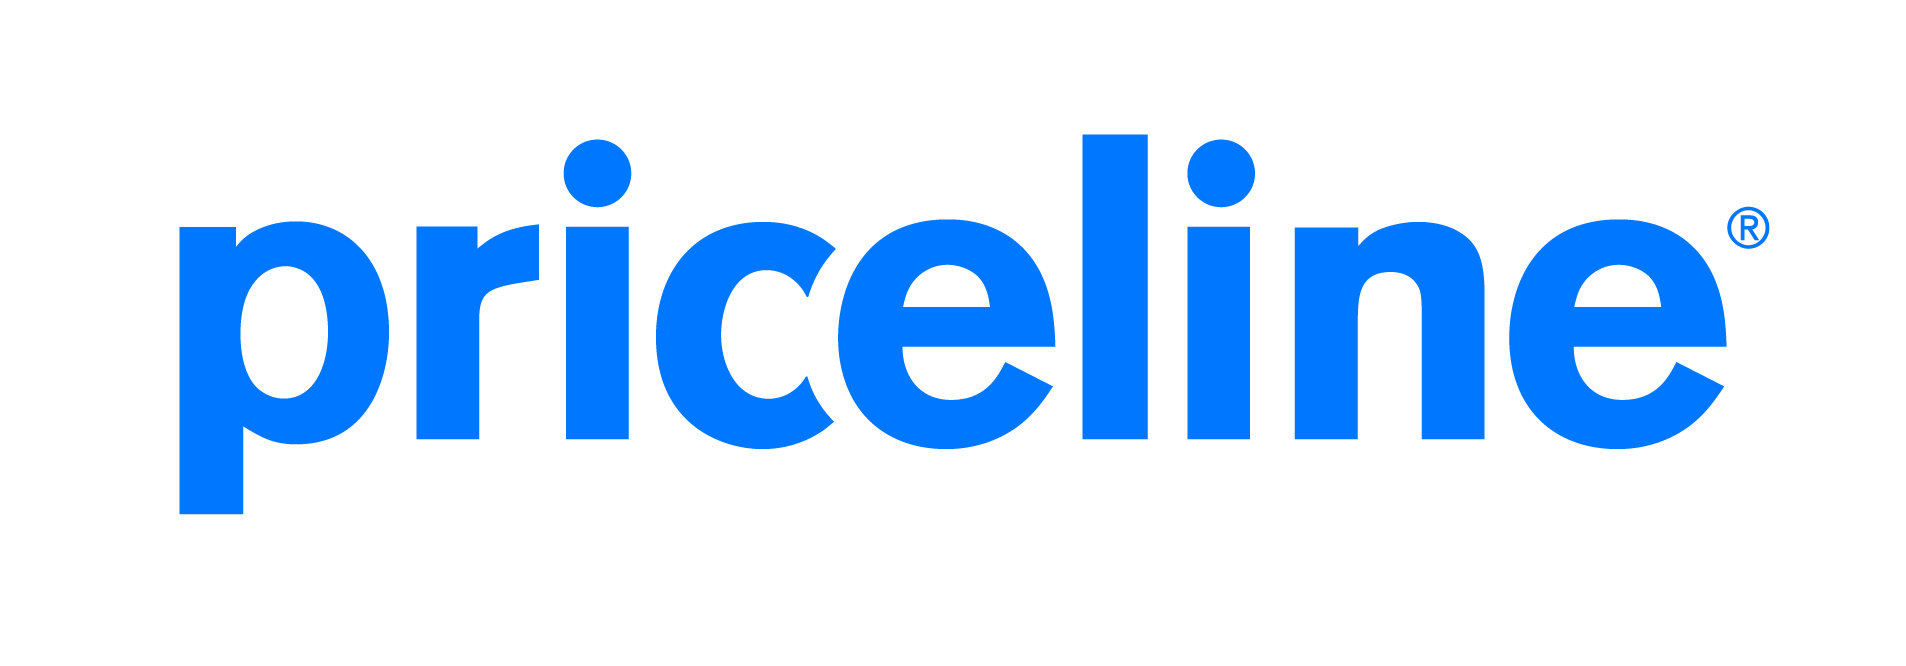 Logo Priceline